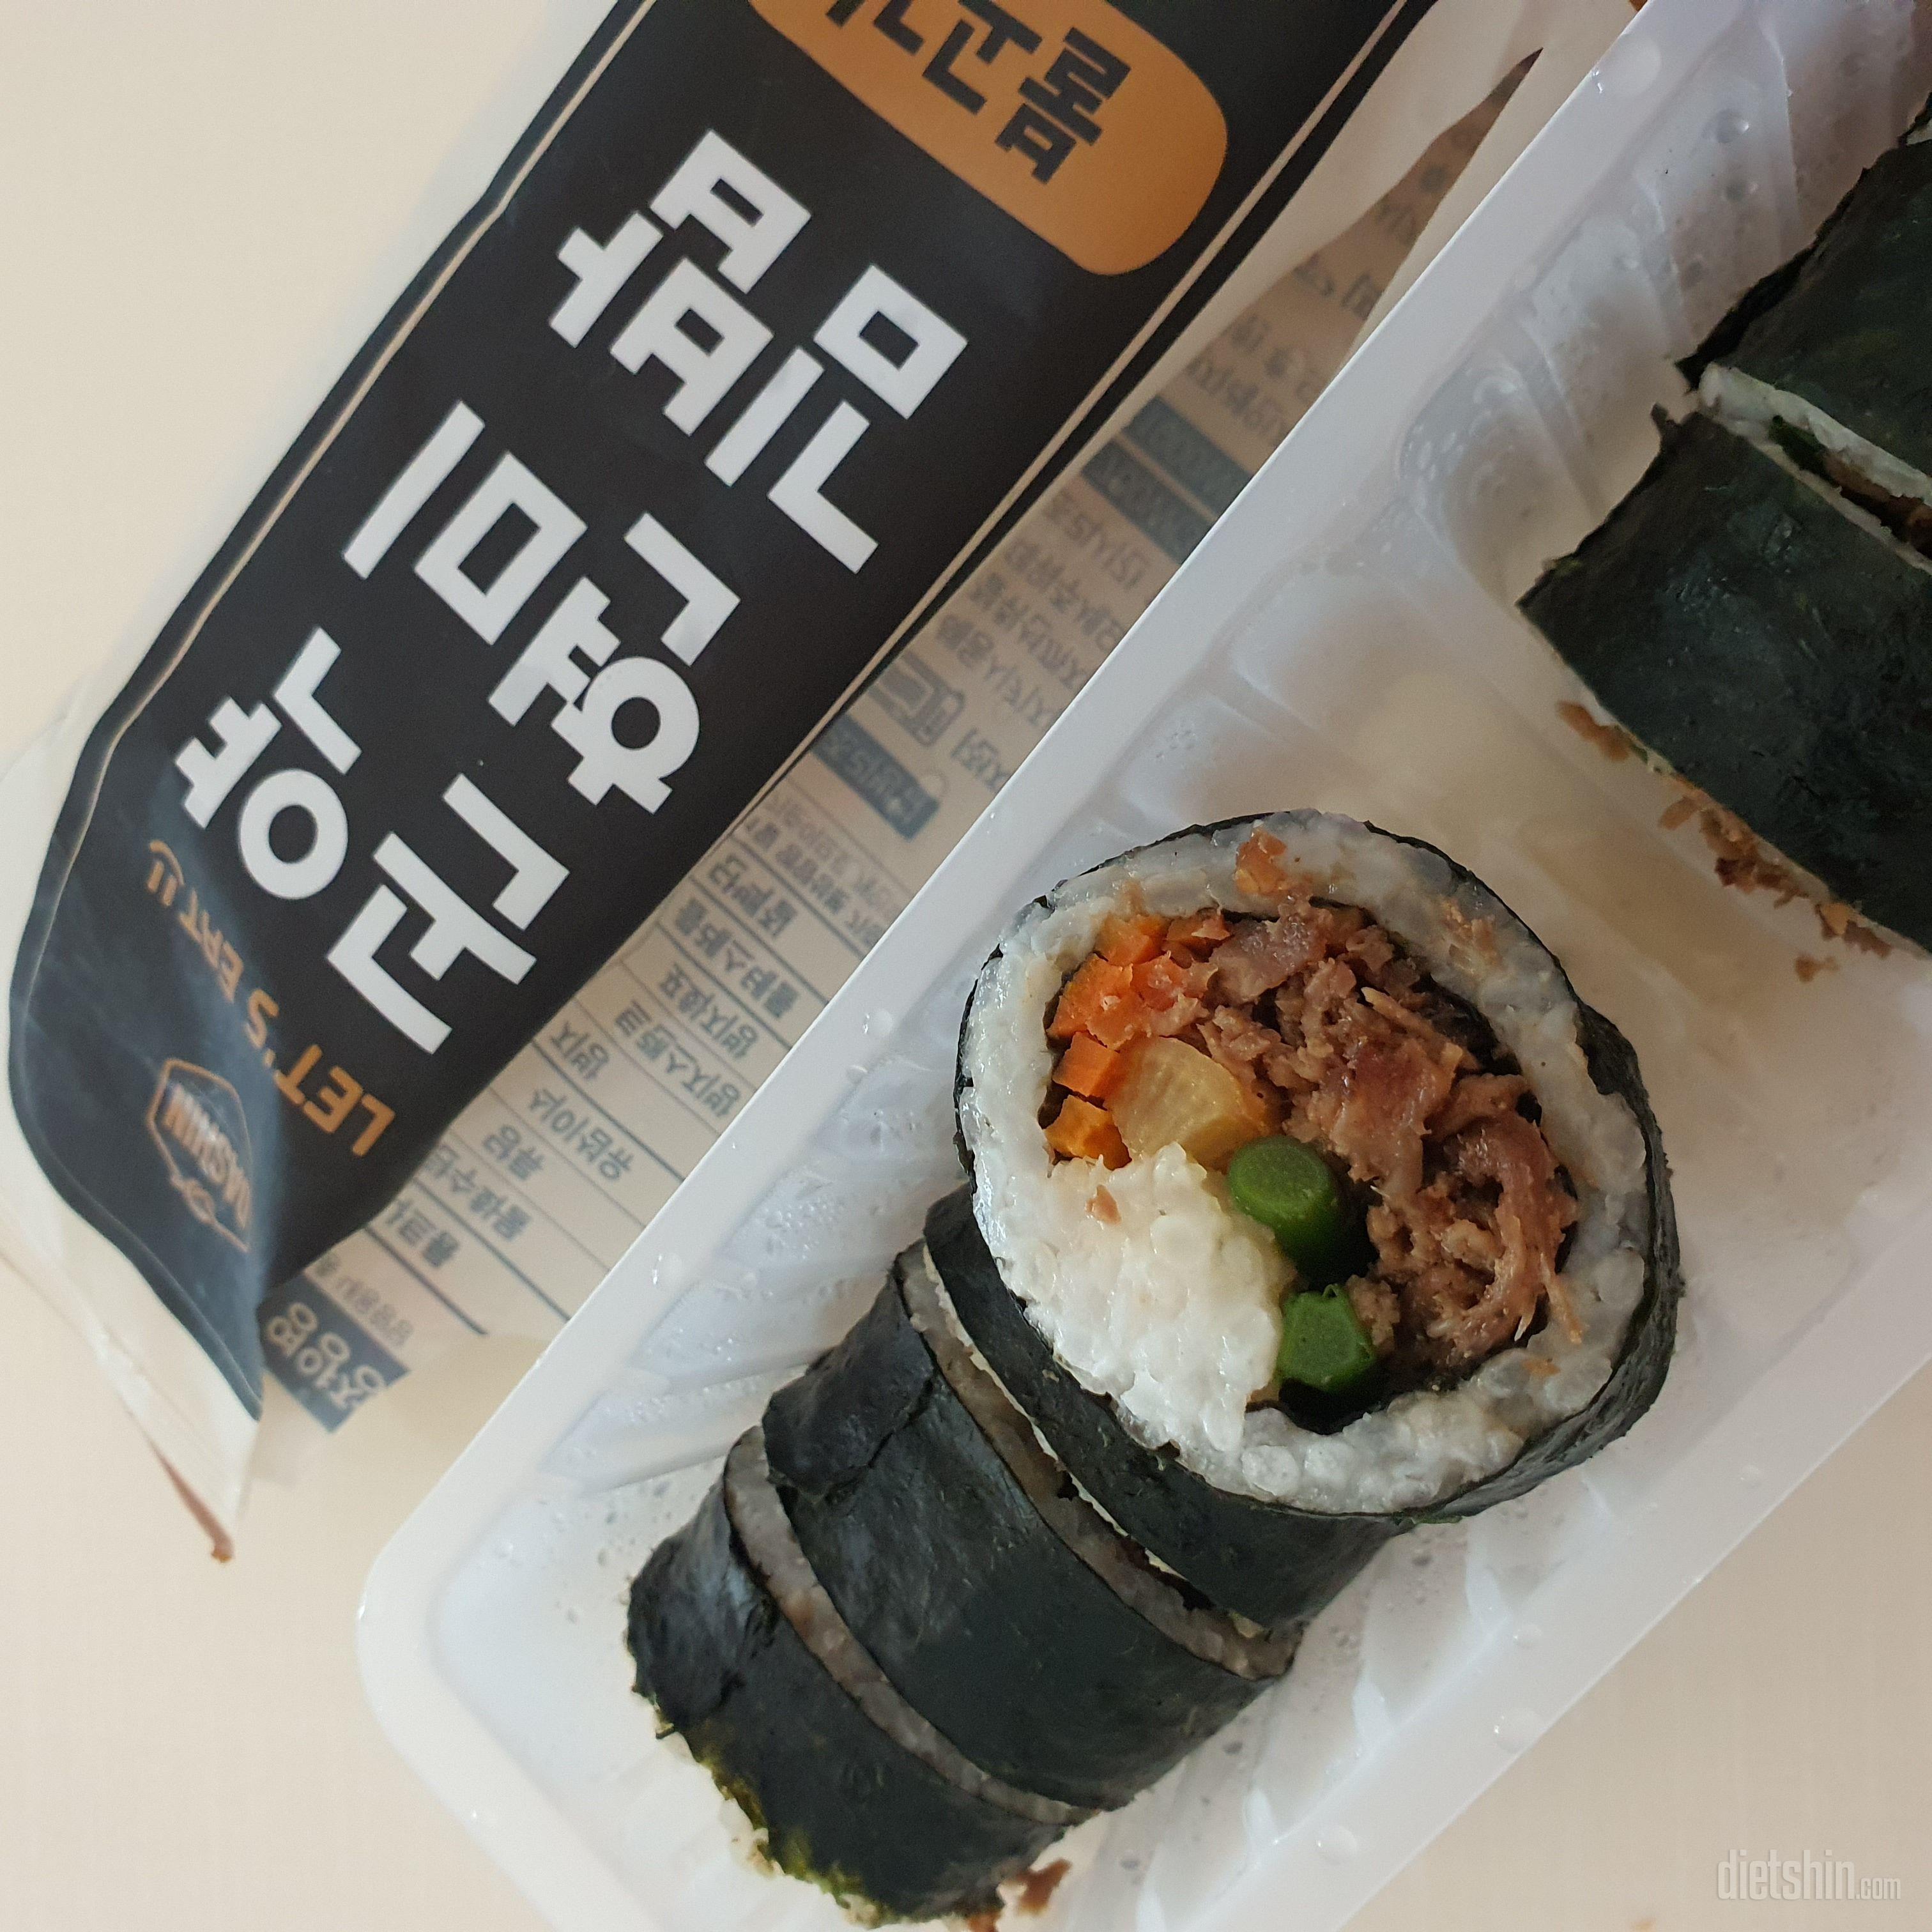 곤약 현미 김밥 너무 맛있어요.
불